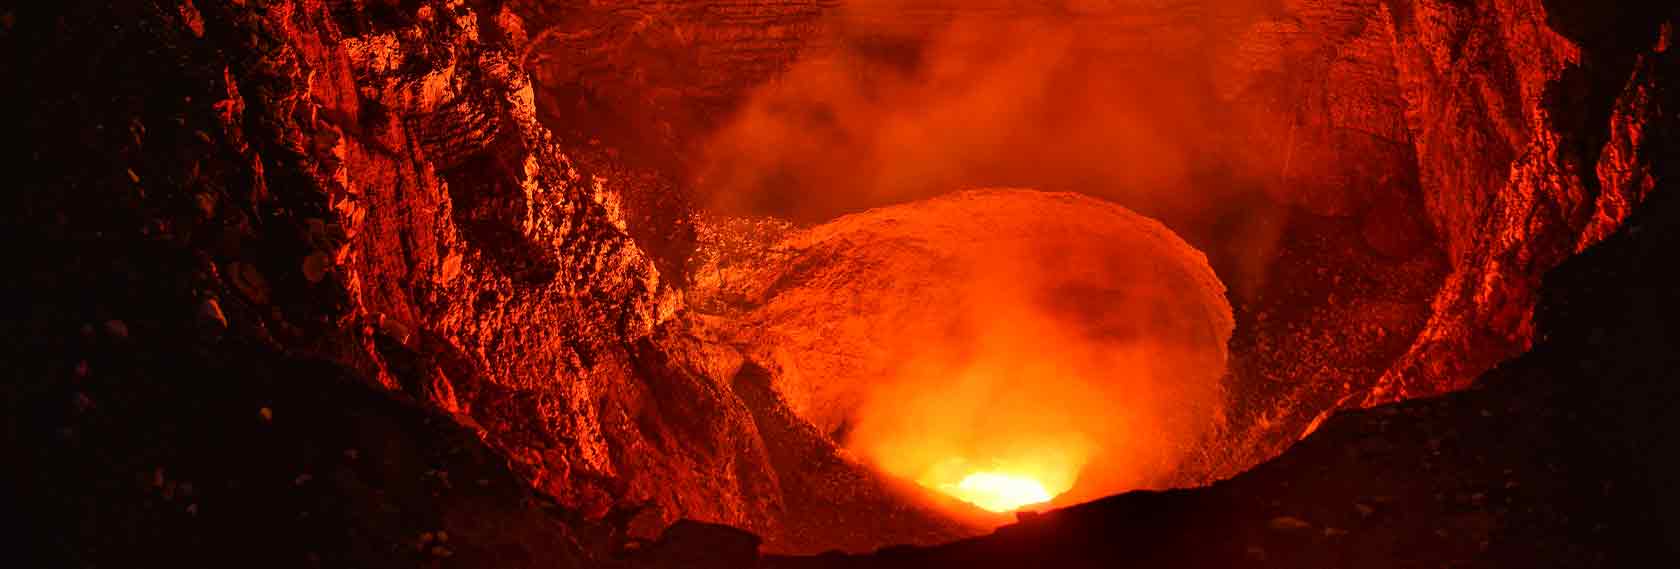 Vulkane - faszinierender Feuerzauber